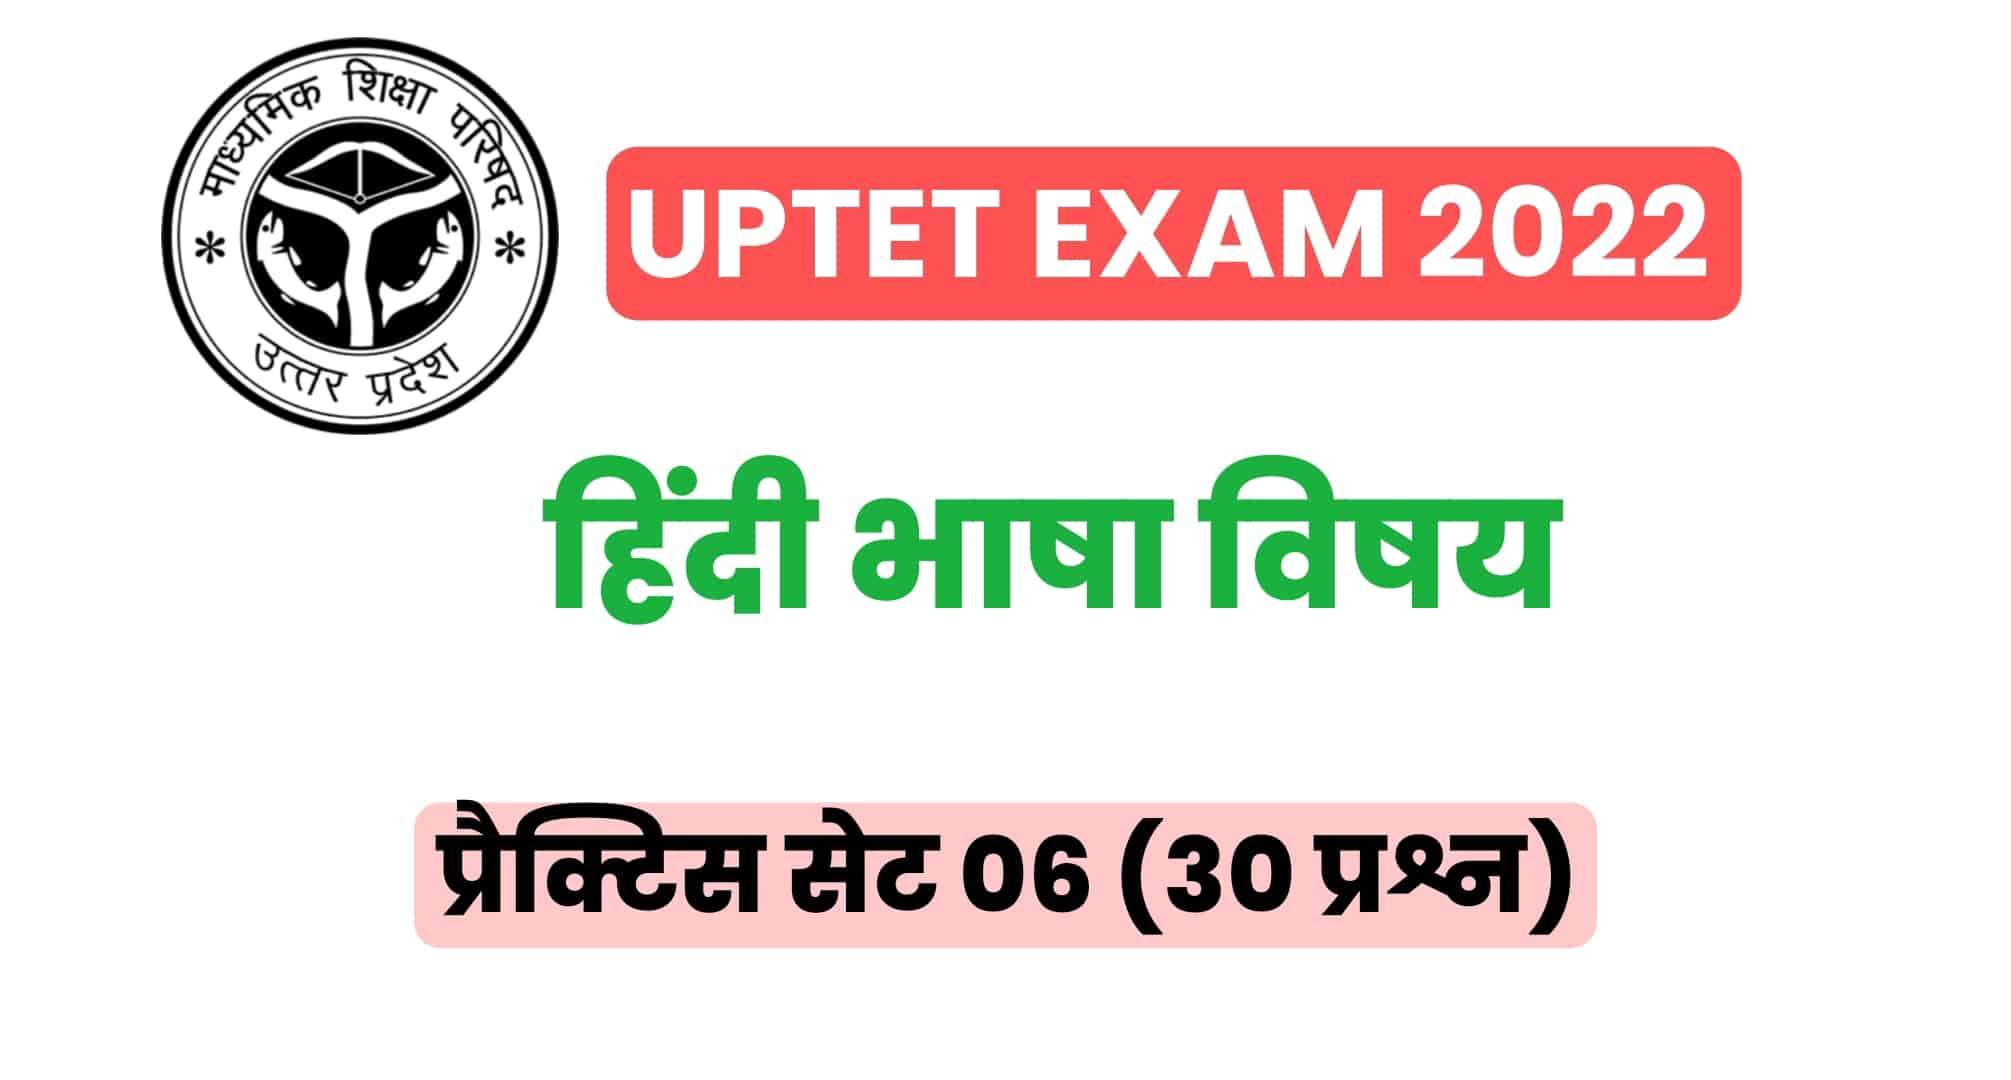 UPTET हिंदी विषय प्रैक्टिस सेट 06 : UPTET की परीक्षा में कई बार पूछे गए इन प्रश्नों को जरूर पढ़ें